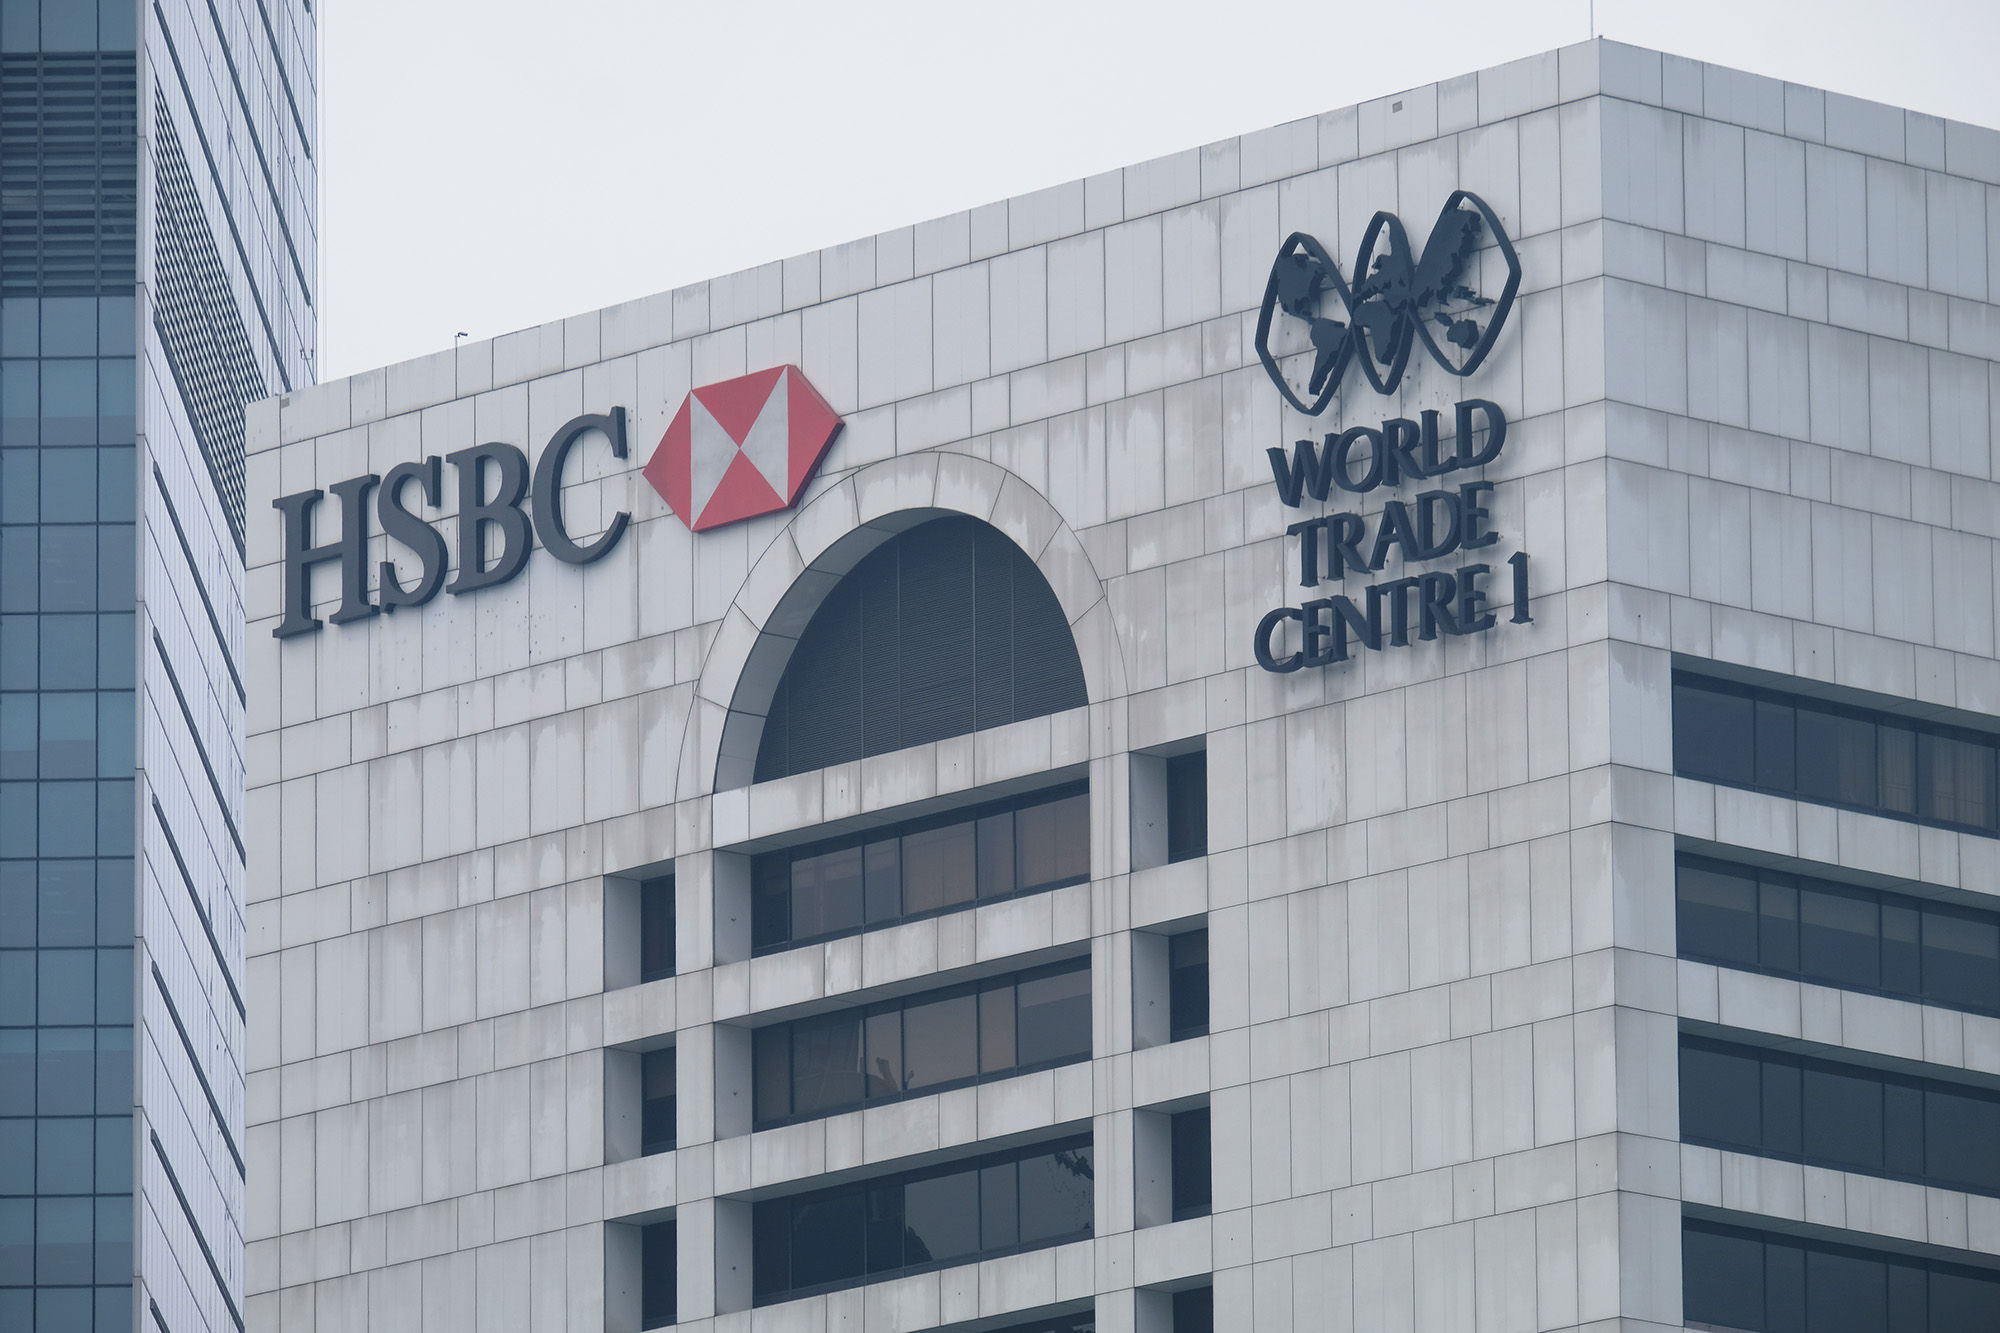 Gedung bank HSBC di kawasan Sudirman, Jakarta. Foto: Ismail Pohan/TrenAsia